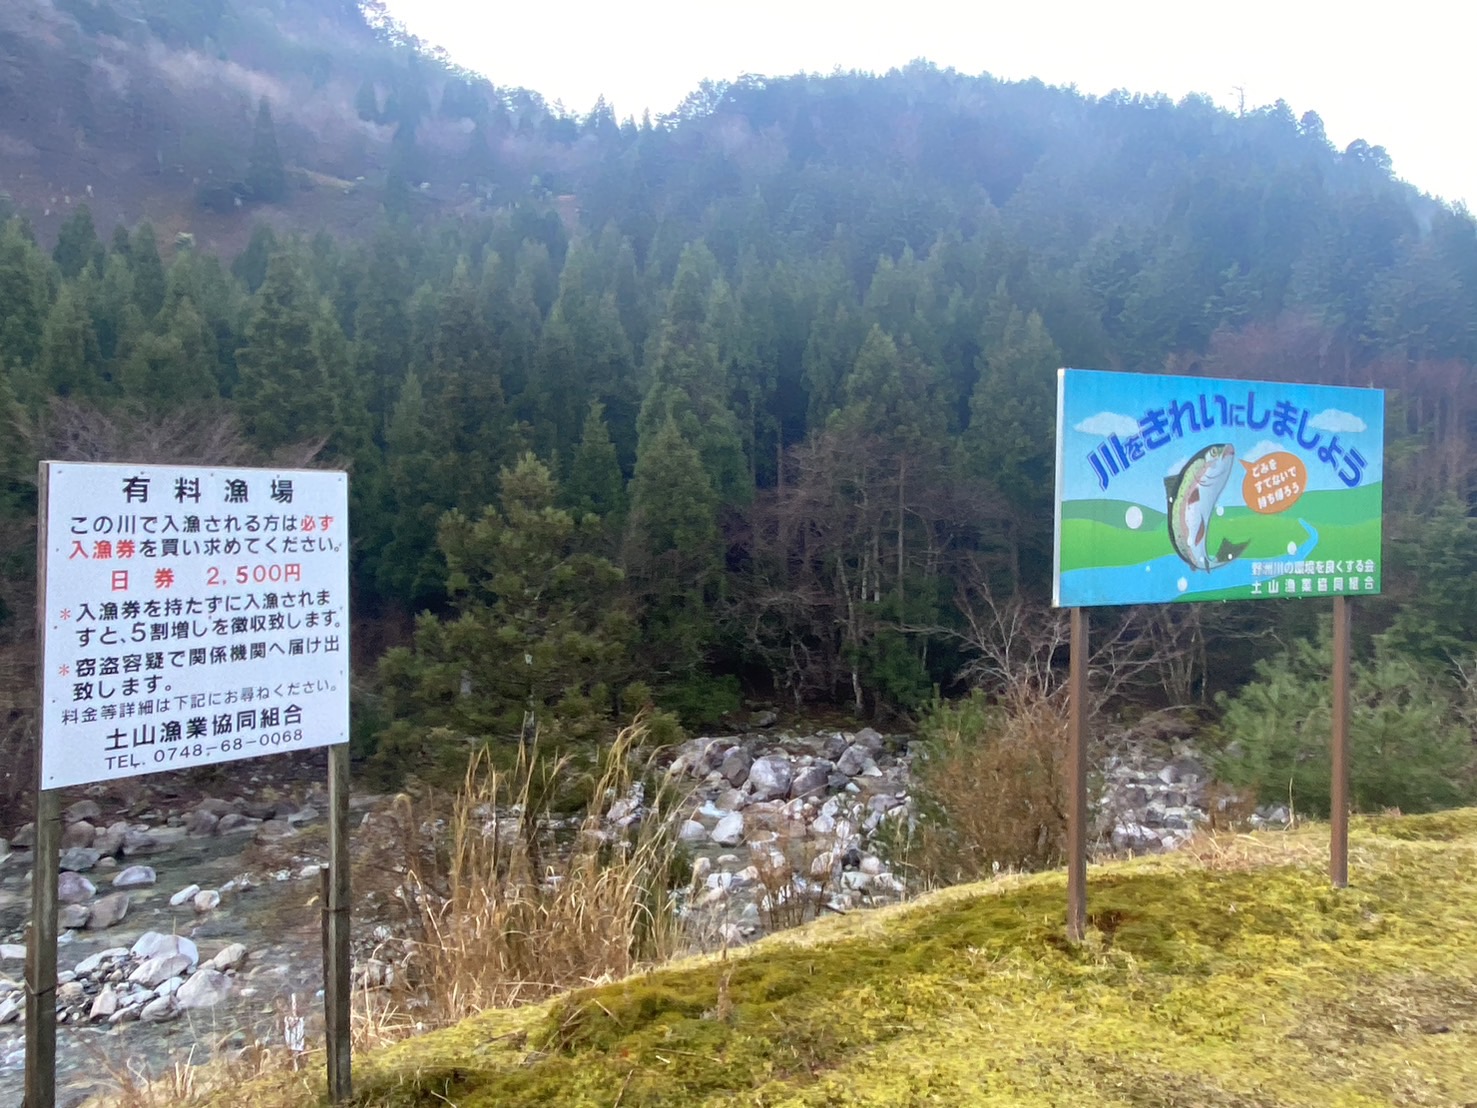 滋賀県甲賀市土山漁協管内の野洲川ダム上流の渓流釣りが解禁しました。